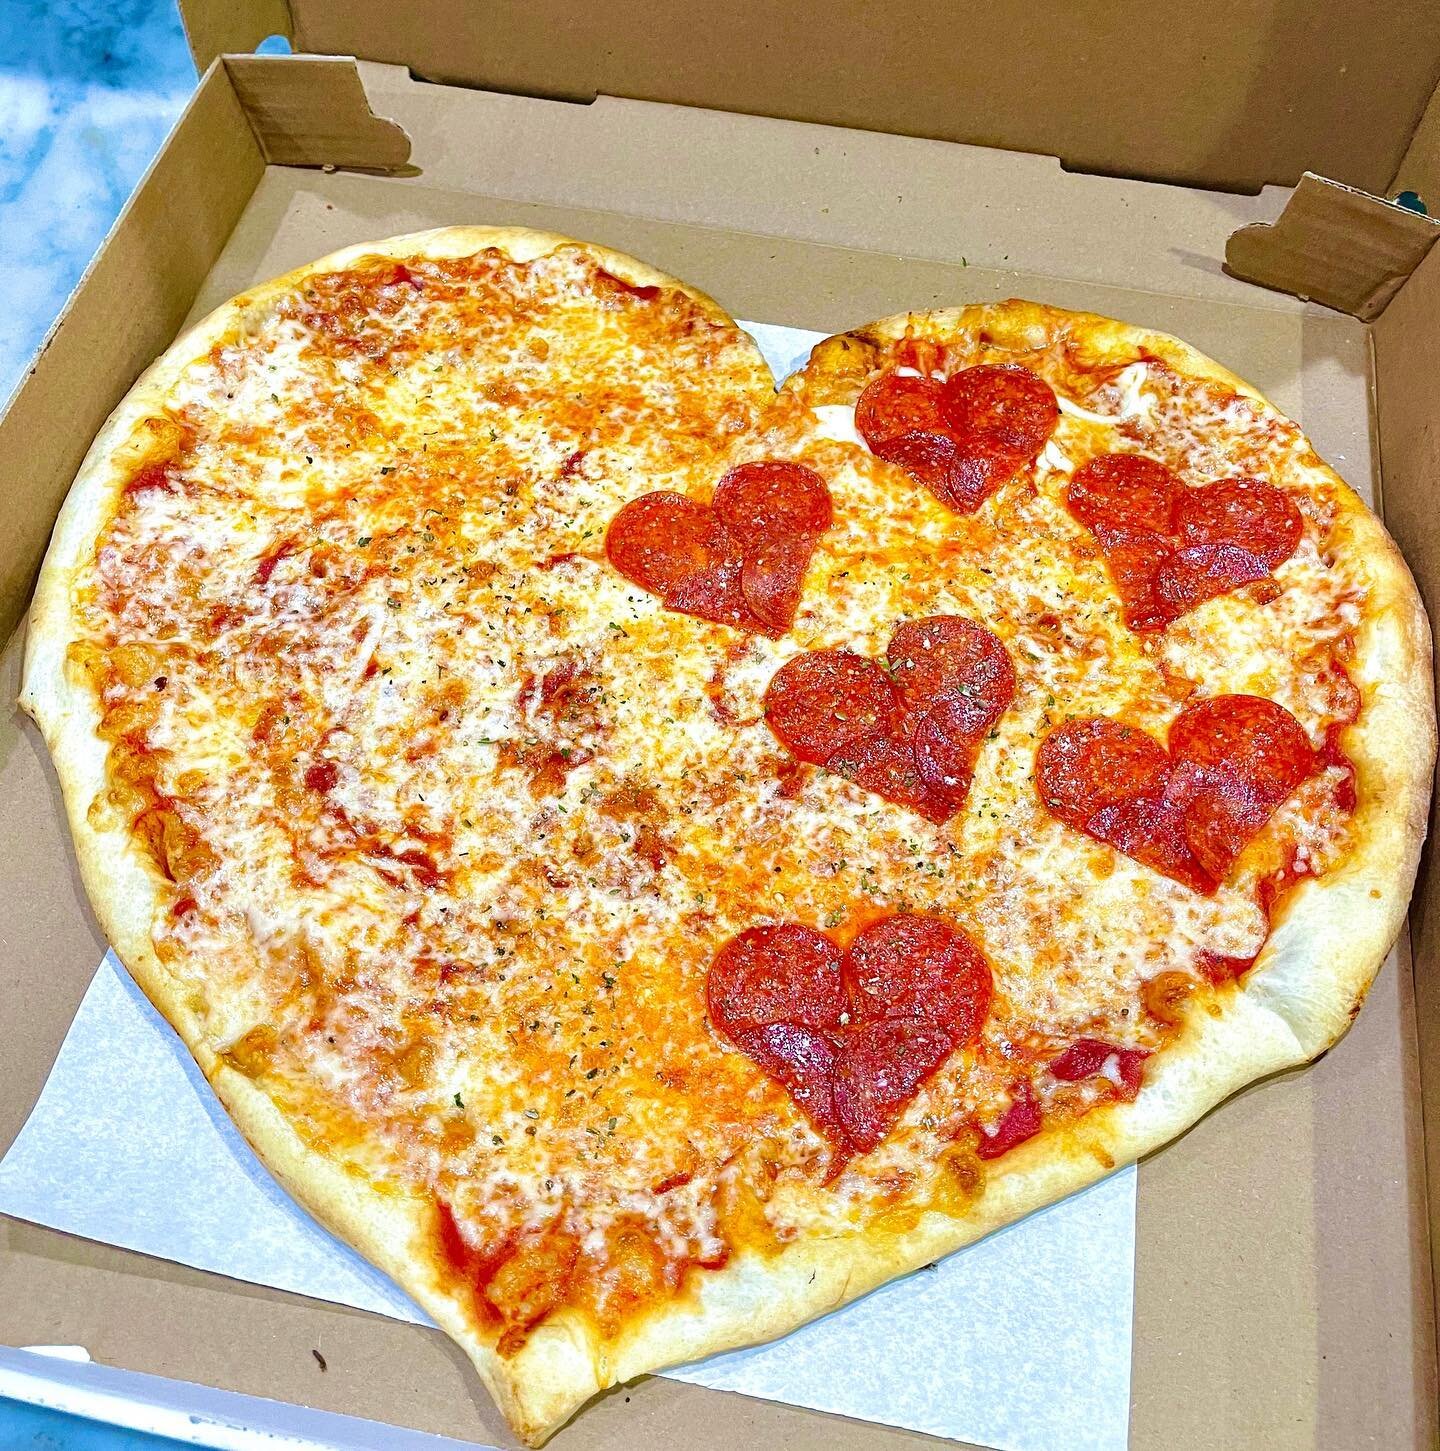 ❤️ 💕 Love is love 💕 ❤️ Happy Valentine&rsquo;s Day! 

#heartshapedpizza #magichands #valentinesday #love #valentinesday2021 #cmonnow #saladslice #veggies #vegetariansaresexy #pizzamadevegetarian
 #aegeawest #greekfood #bacon #swissburger #restauran